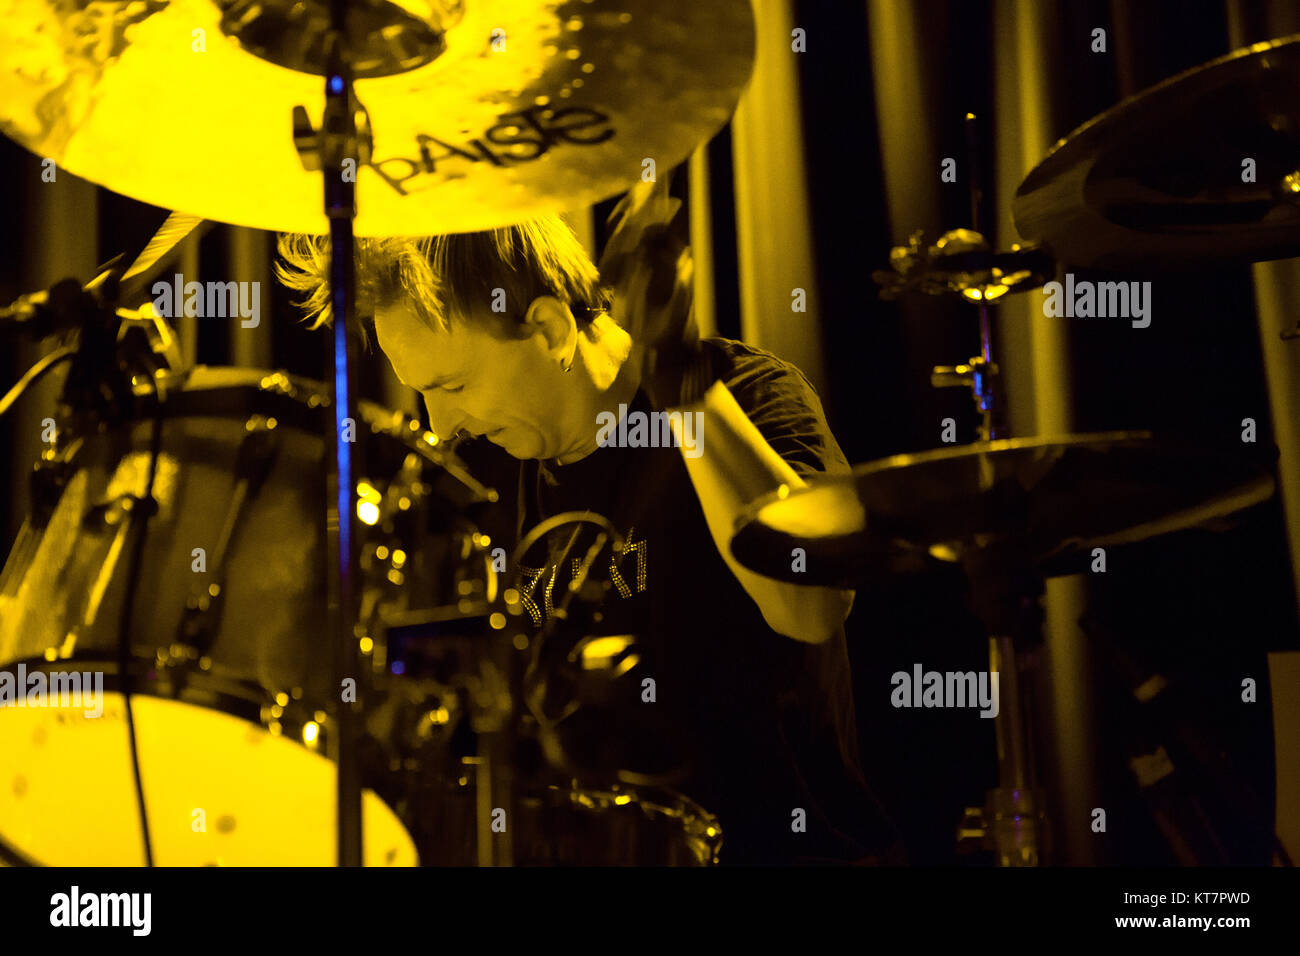 I fanghi americano metal band i Melvins esegue un concerto dal vivo al Blå in Oslo. Qui il batterista Dale Crover è visto dal vivo sul palco. Norvegia, 10/06 2016. Foto Stock